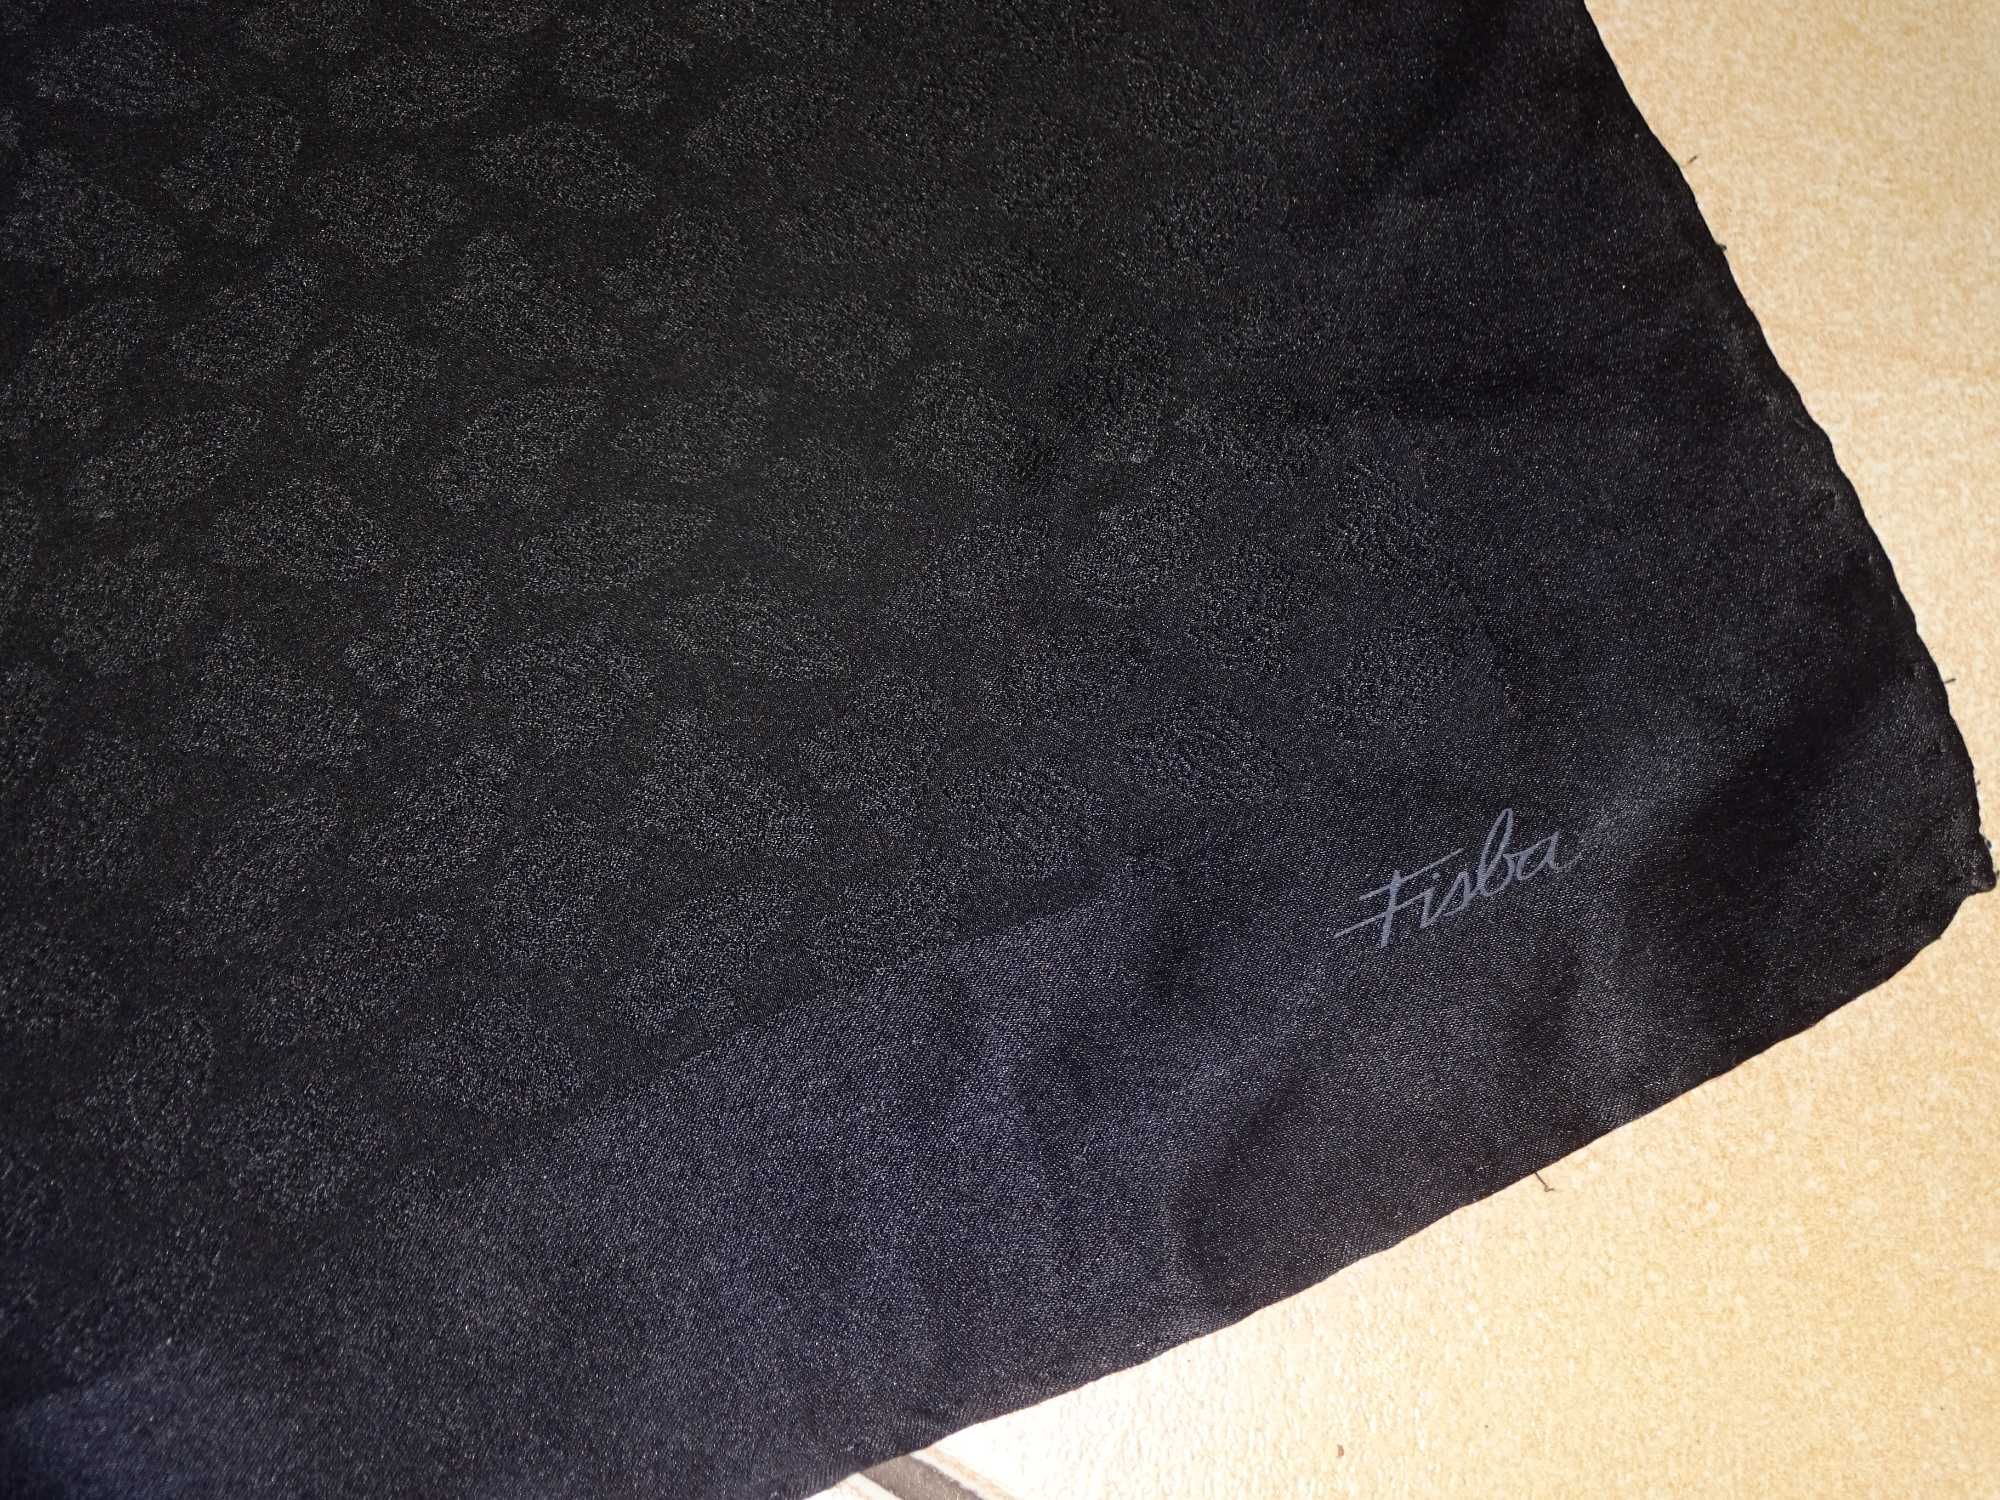 FISBA czarna bardzo duża ręcznie rolowana chusta apaszka 112 x 115 cm